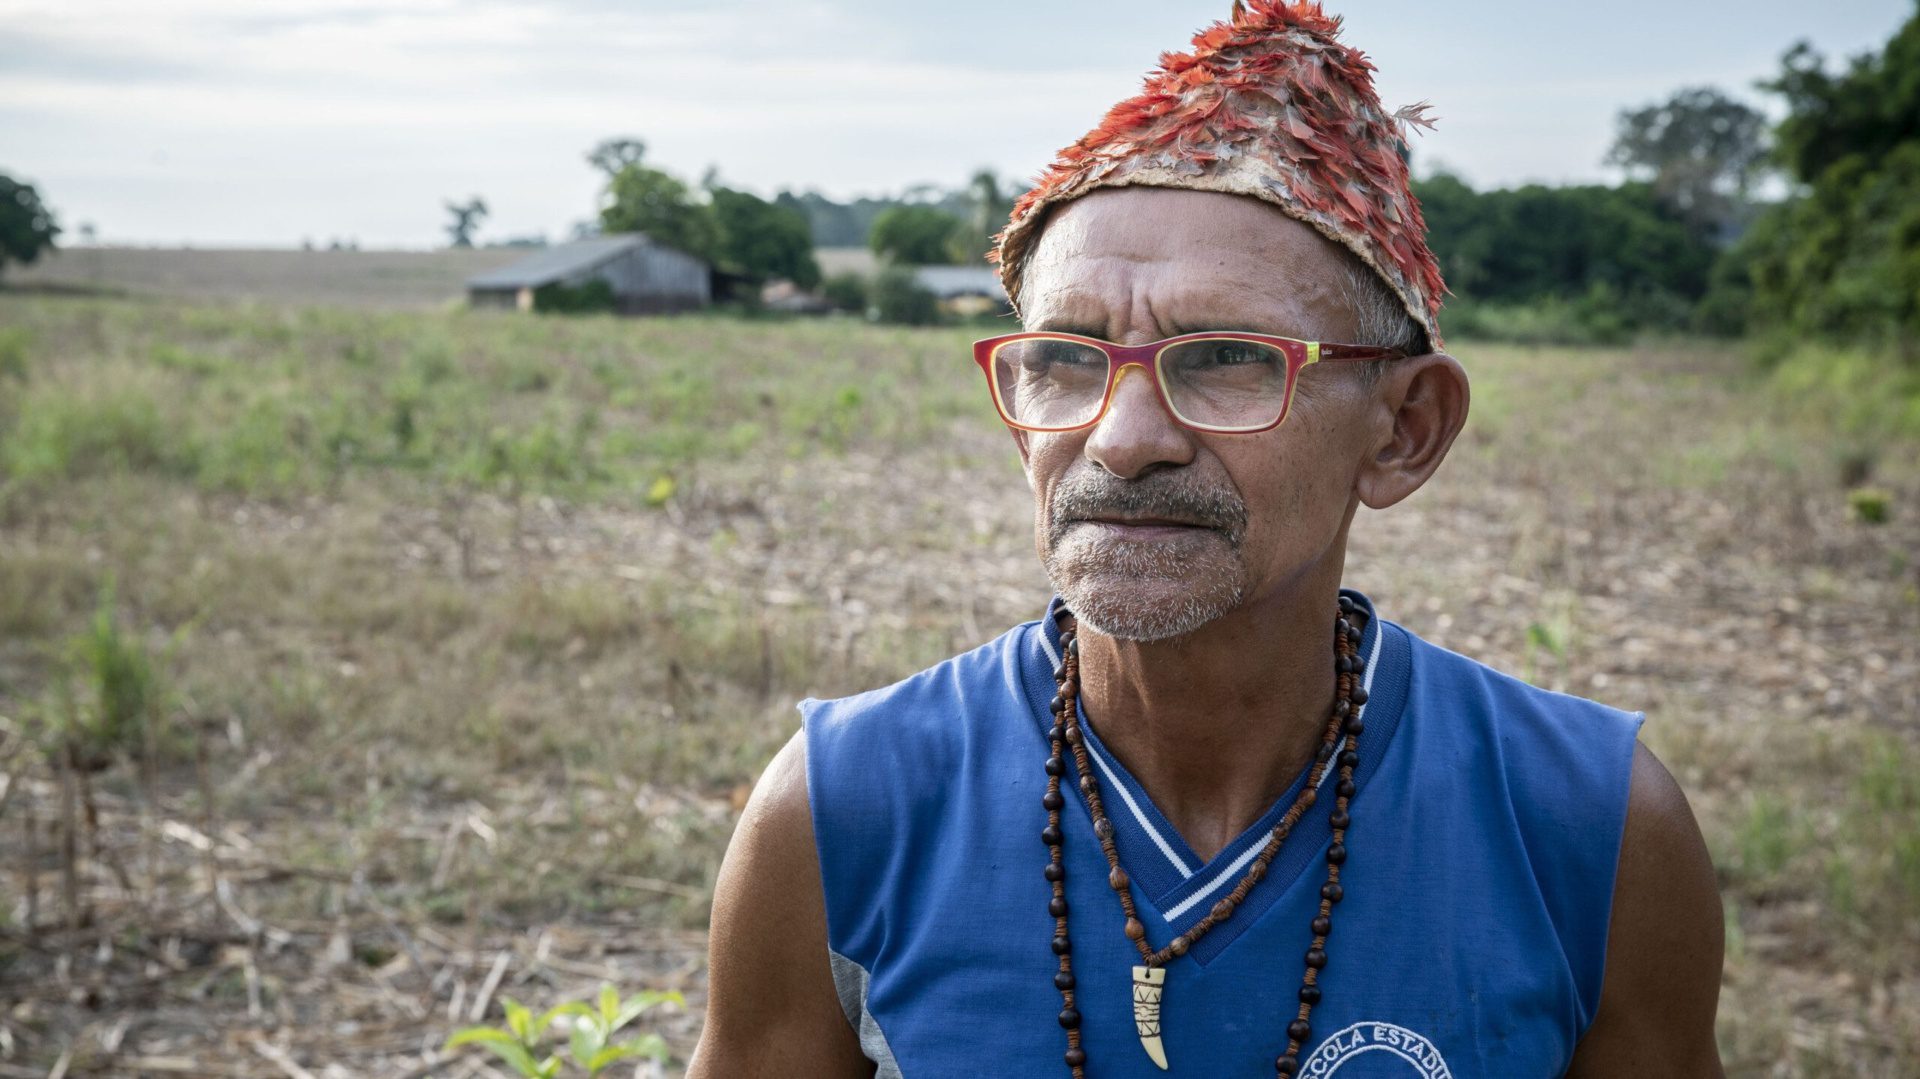 Paulo Mundurukú, farmer in the Lower Tapajós area, Pará. Photo: Thomaz Pedro